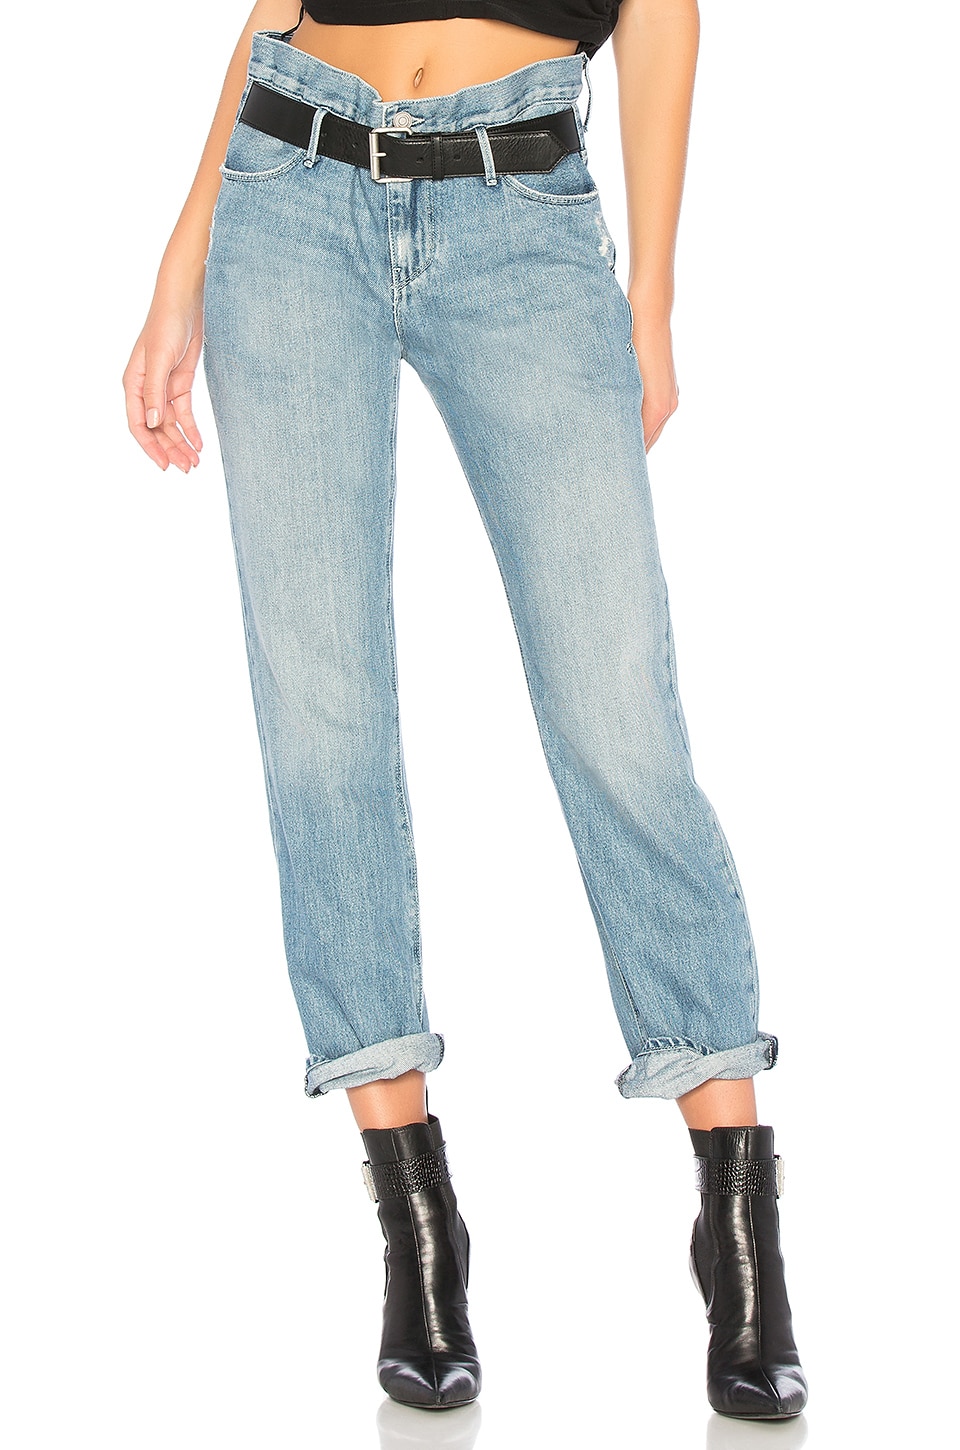 Buy > 28 skinny jeans > in stock